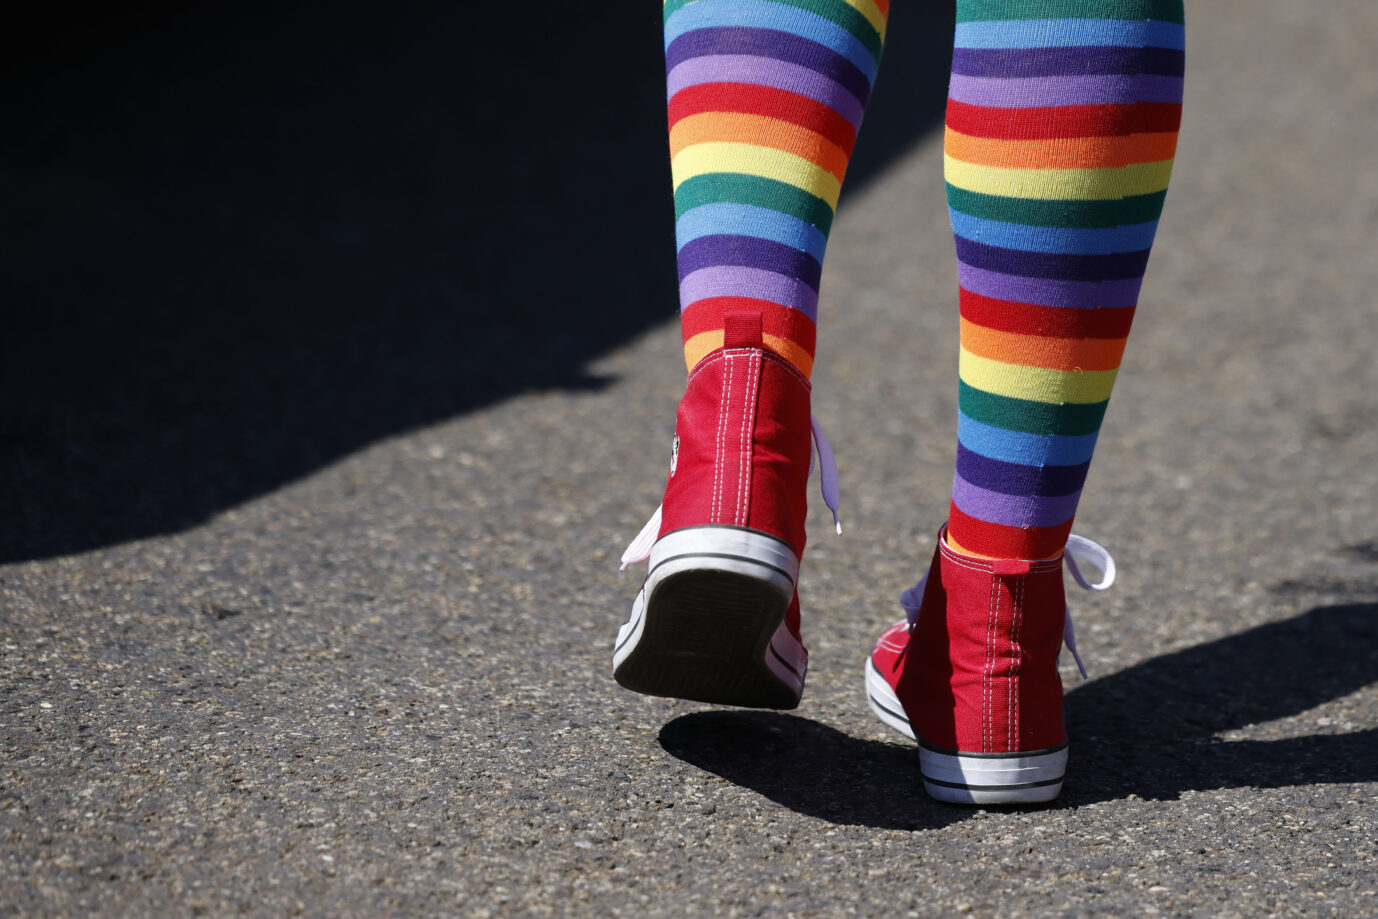 In Niedersachsen hat sich der Verfassungsschutz dem Schutz des Regenbogens als queerem Symbol verschrieben.